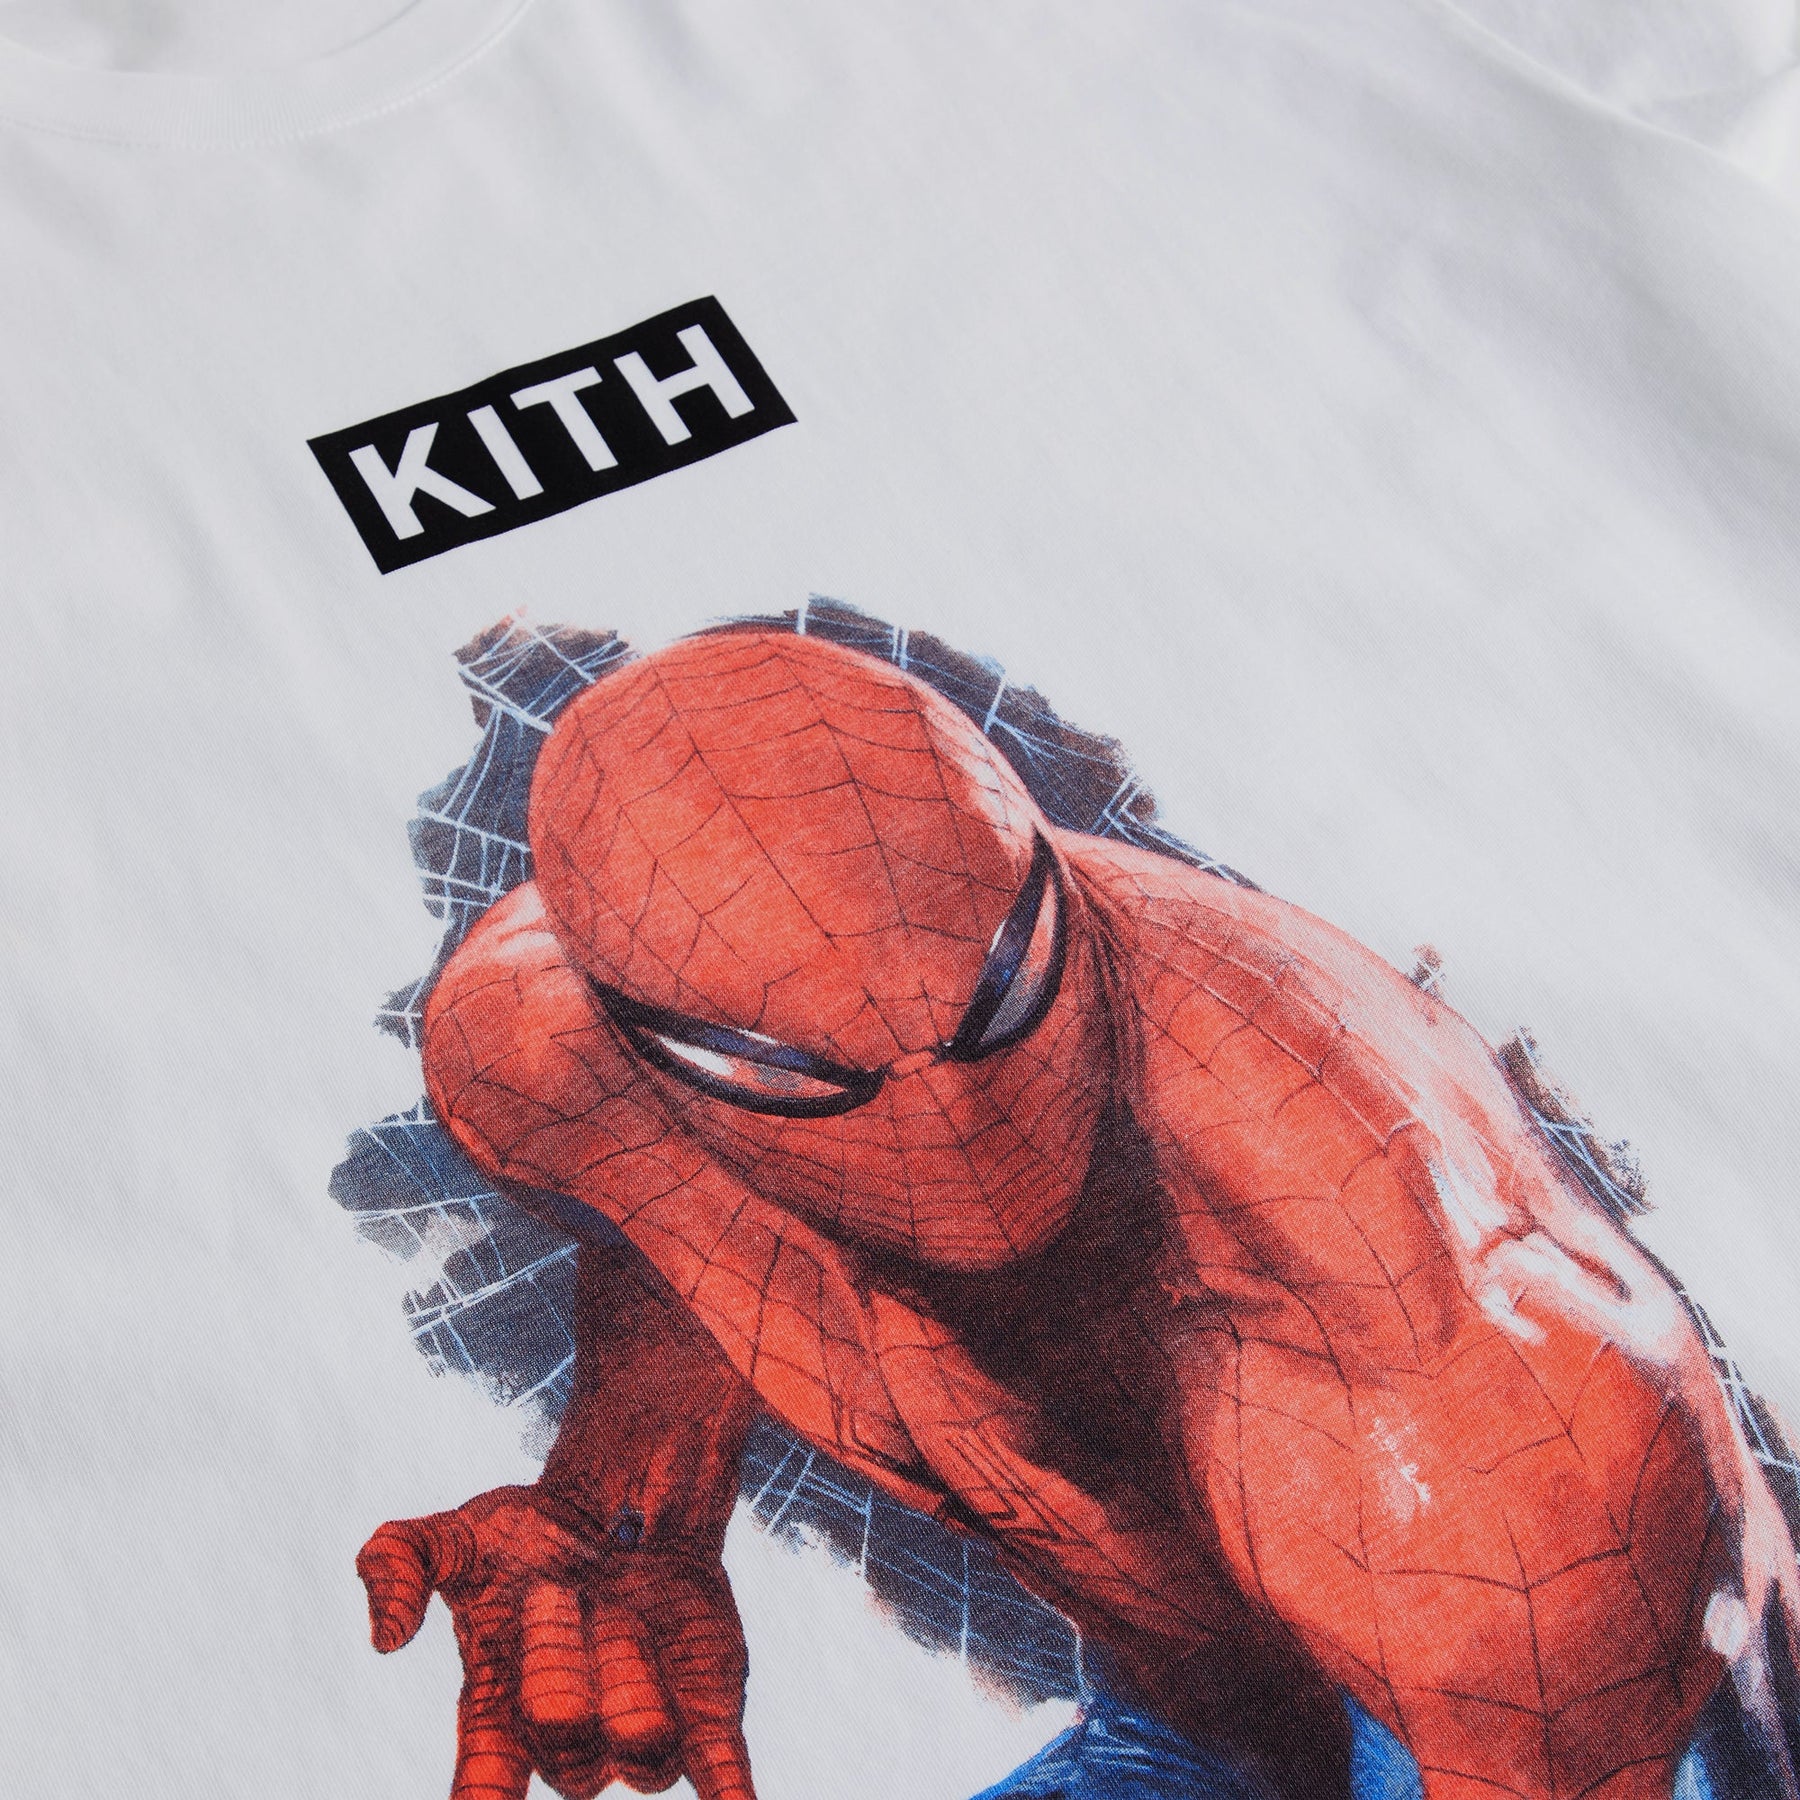 65cm着丈キス KITH × スパイダーマン コラボ 22SS Tシャツ コミック付 XL